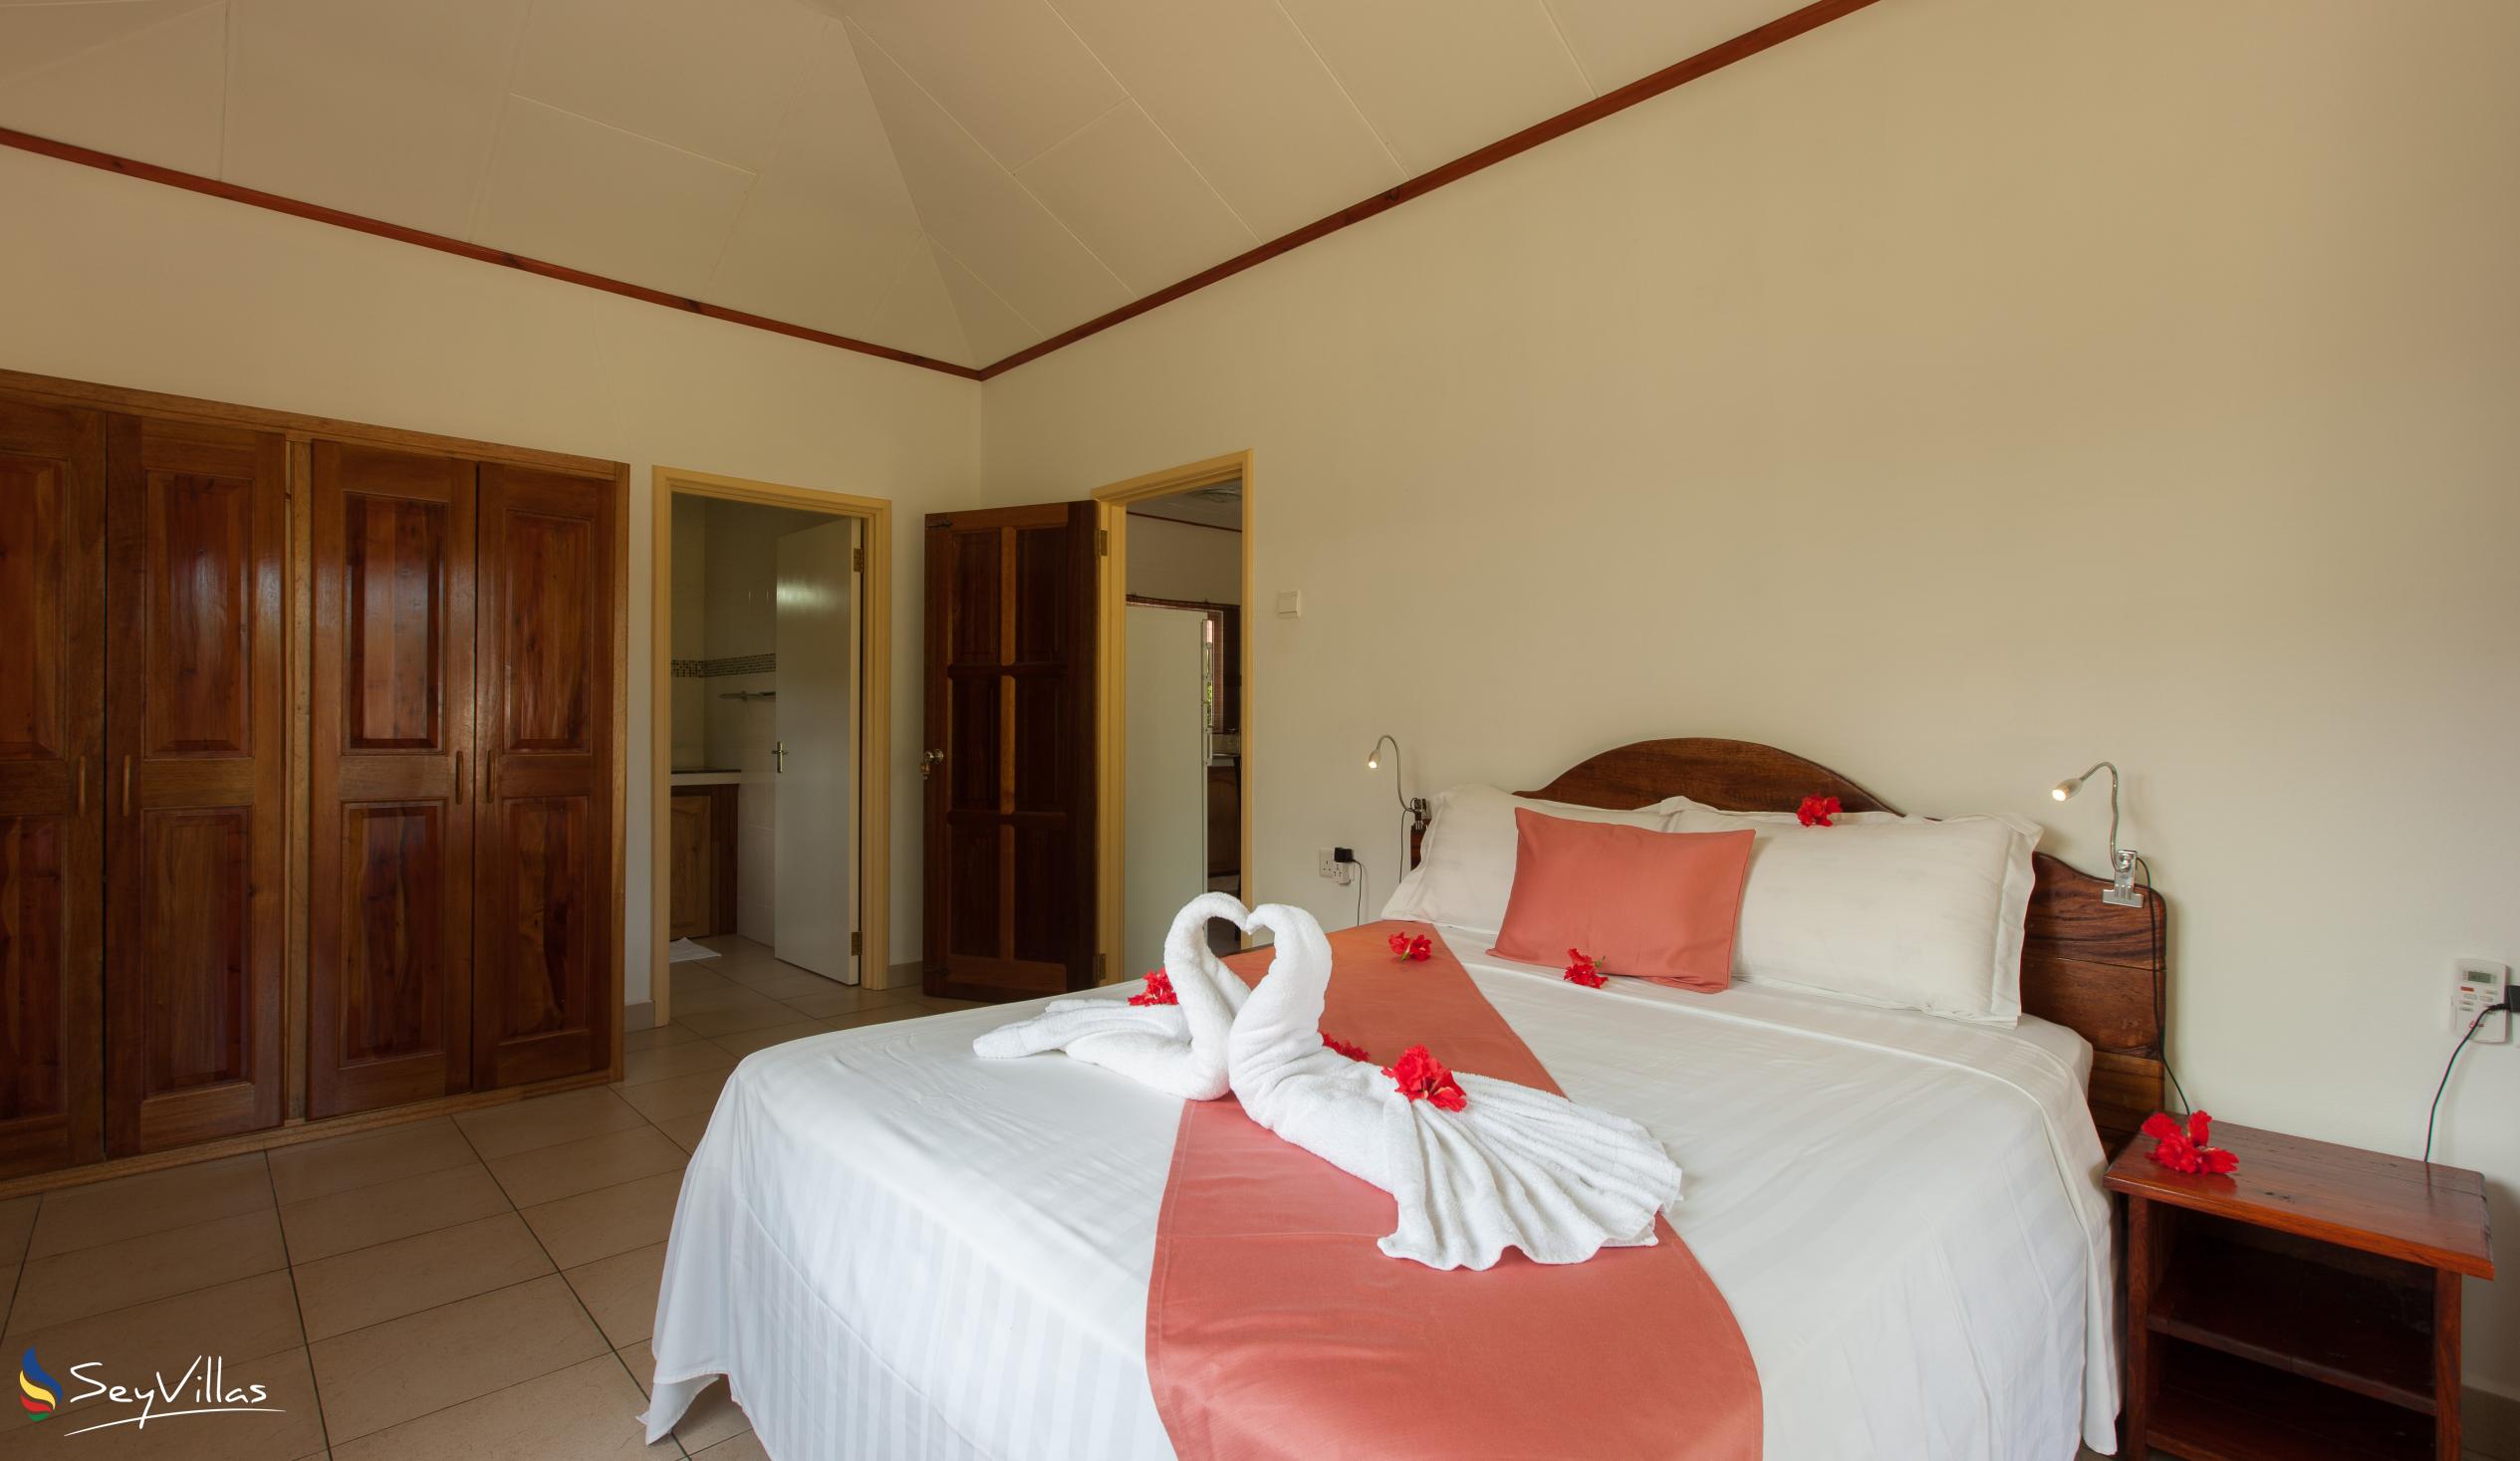 Foto 51: Hostellerie La Digue - Chalet 2 chambres - La Digue (Seychelles)